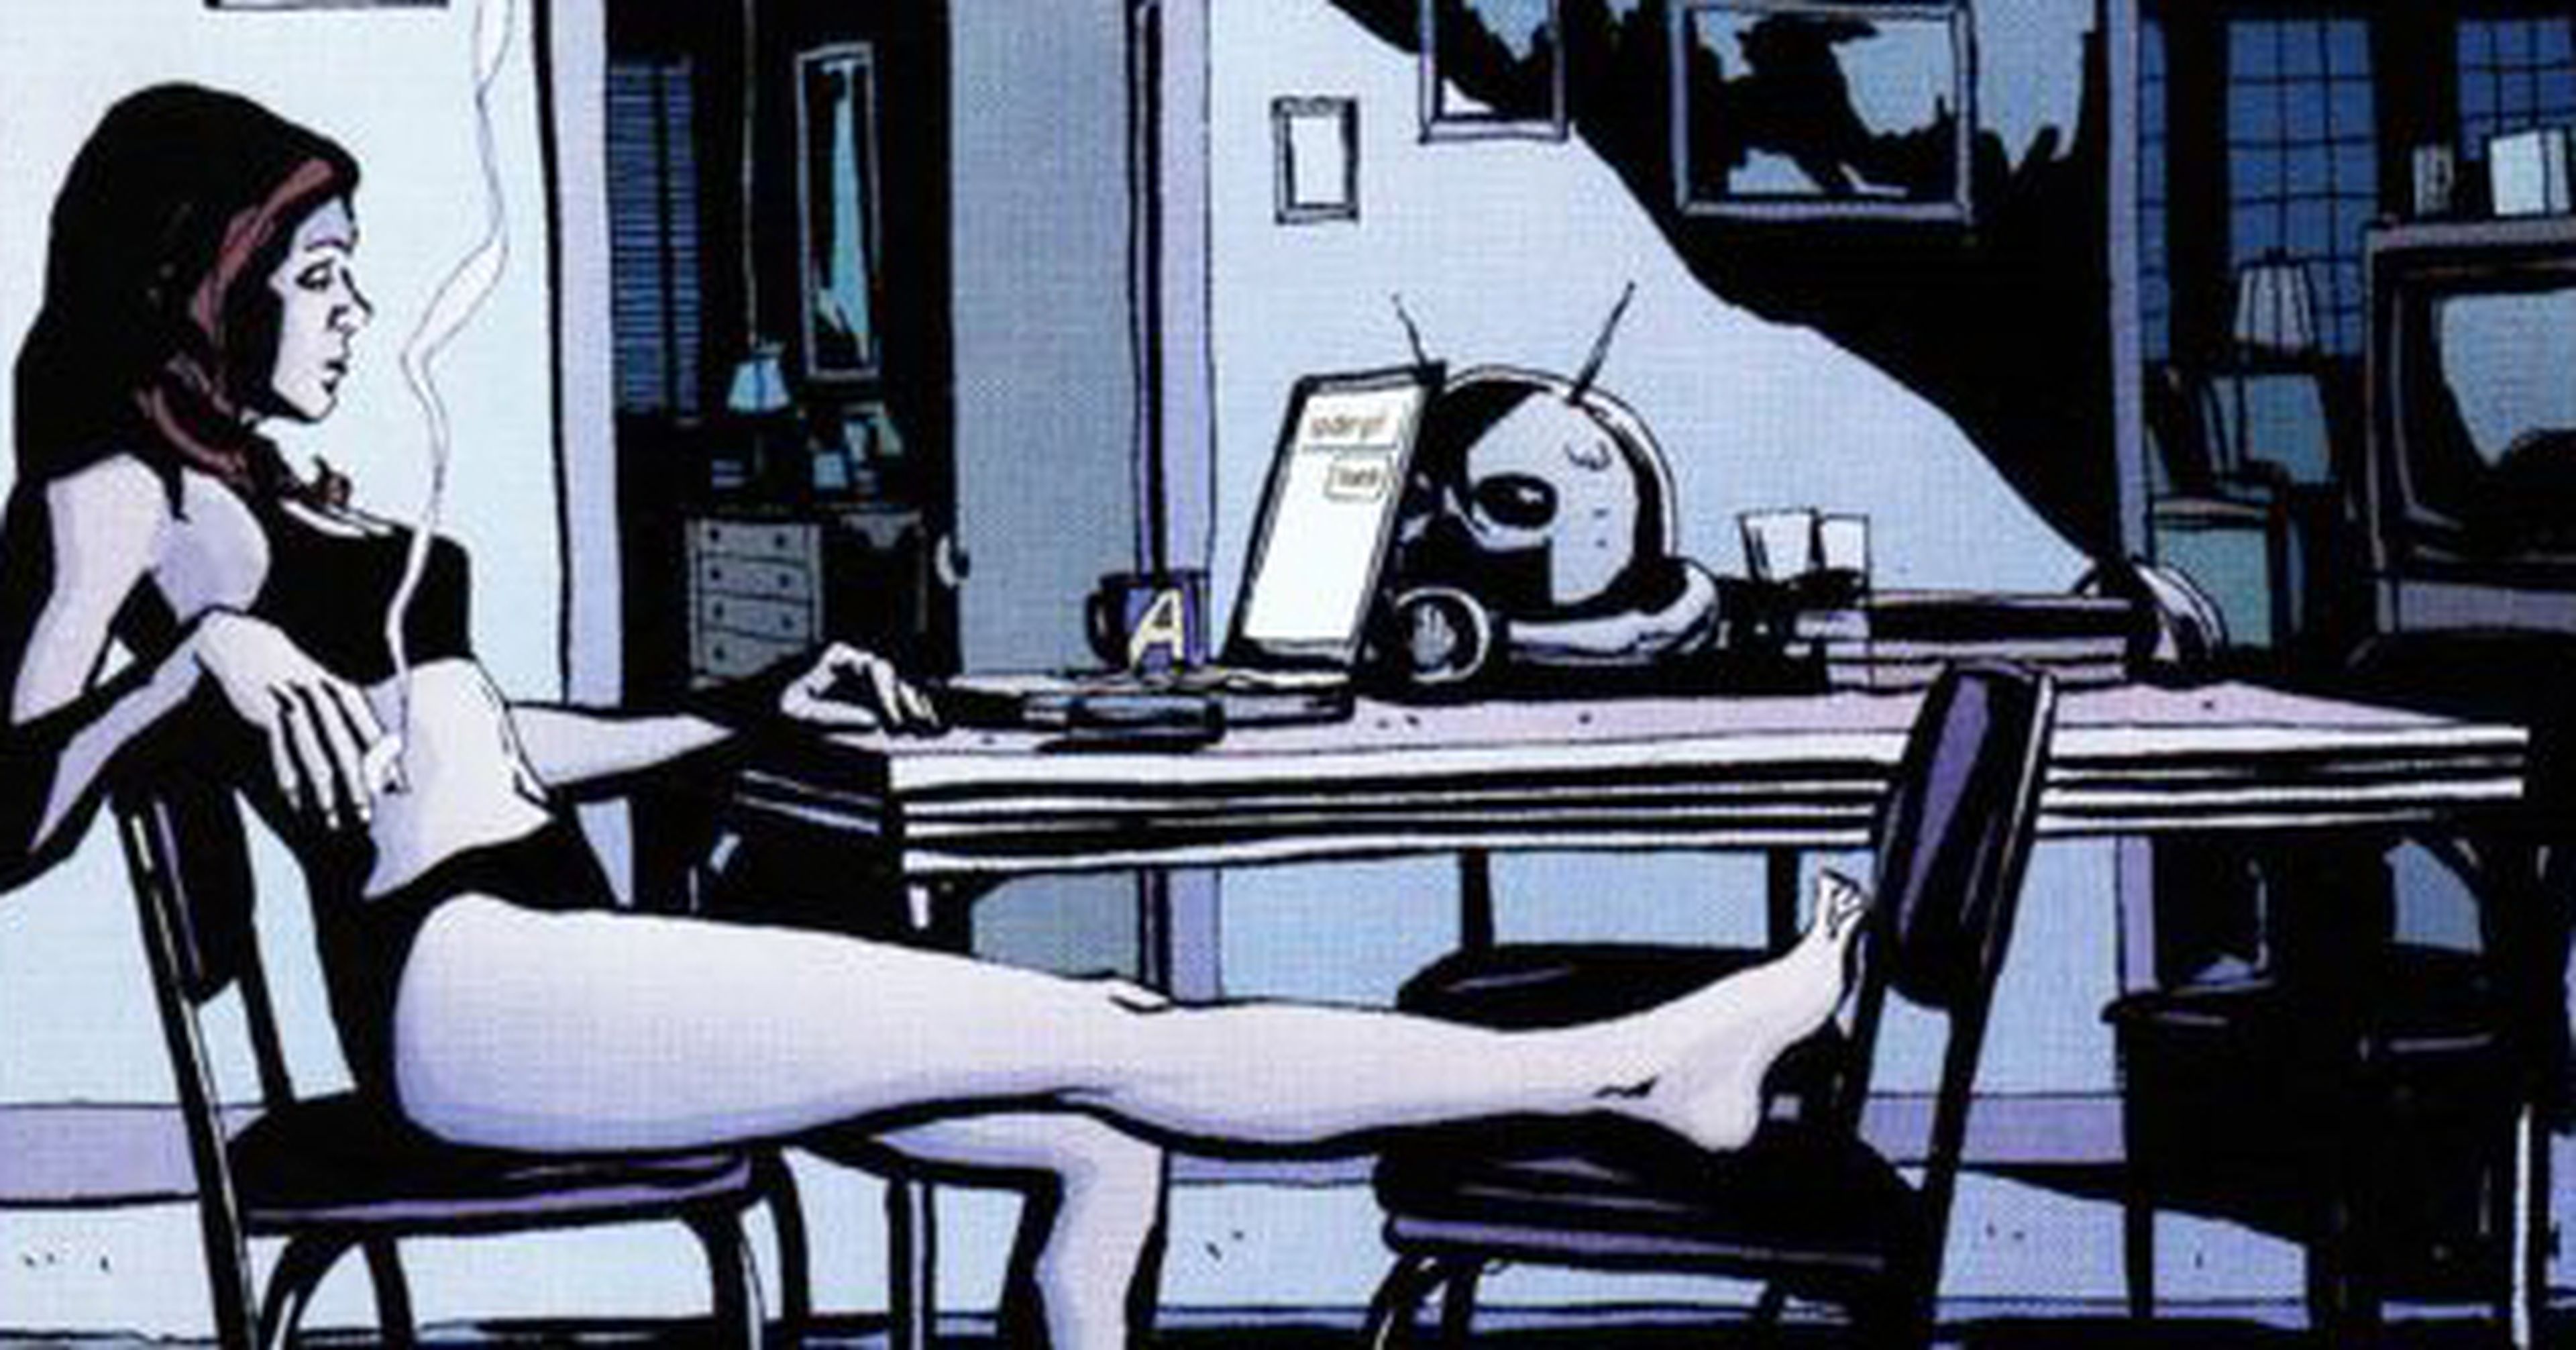 Alias: Reseña del cómic original de Jessica Jones